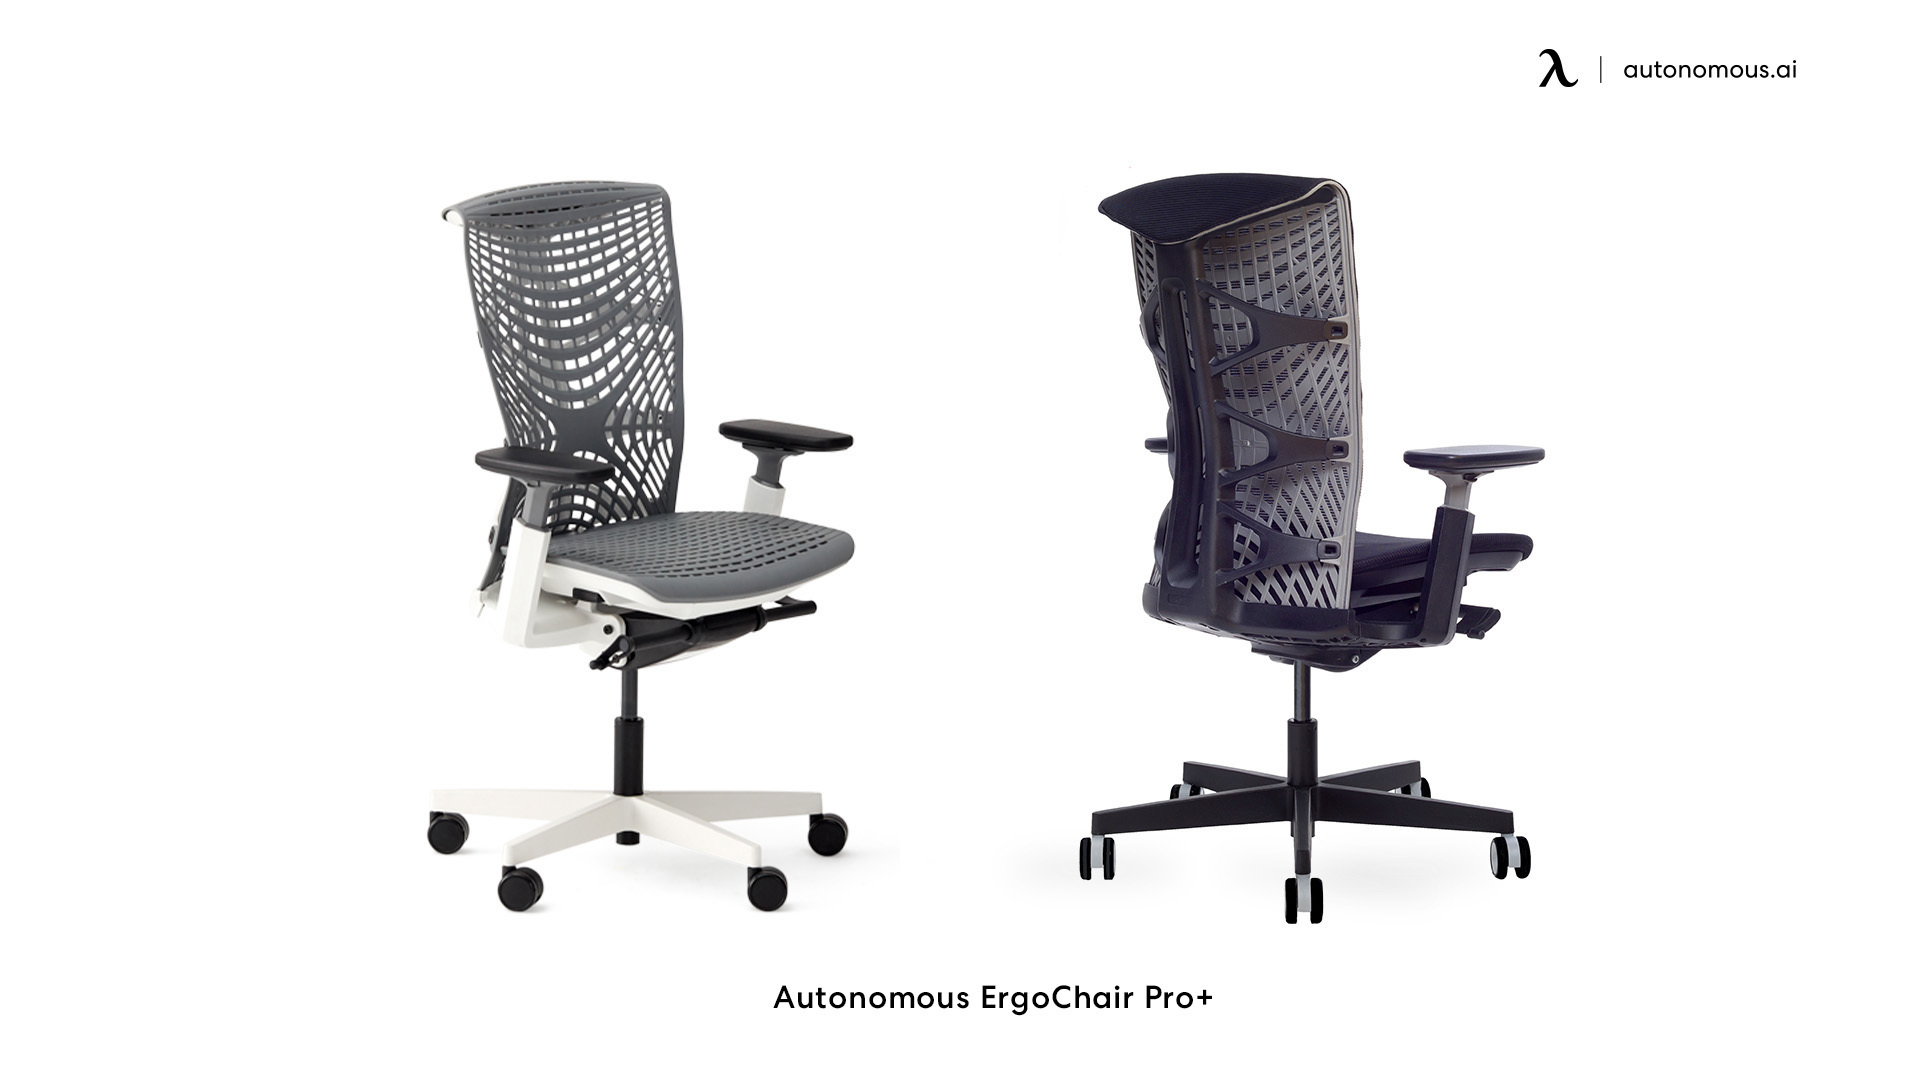 ErgoChair Pro+ comfy home office chair